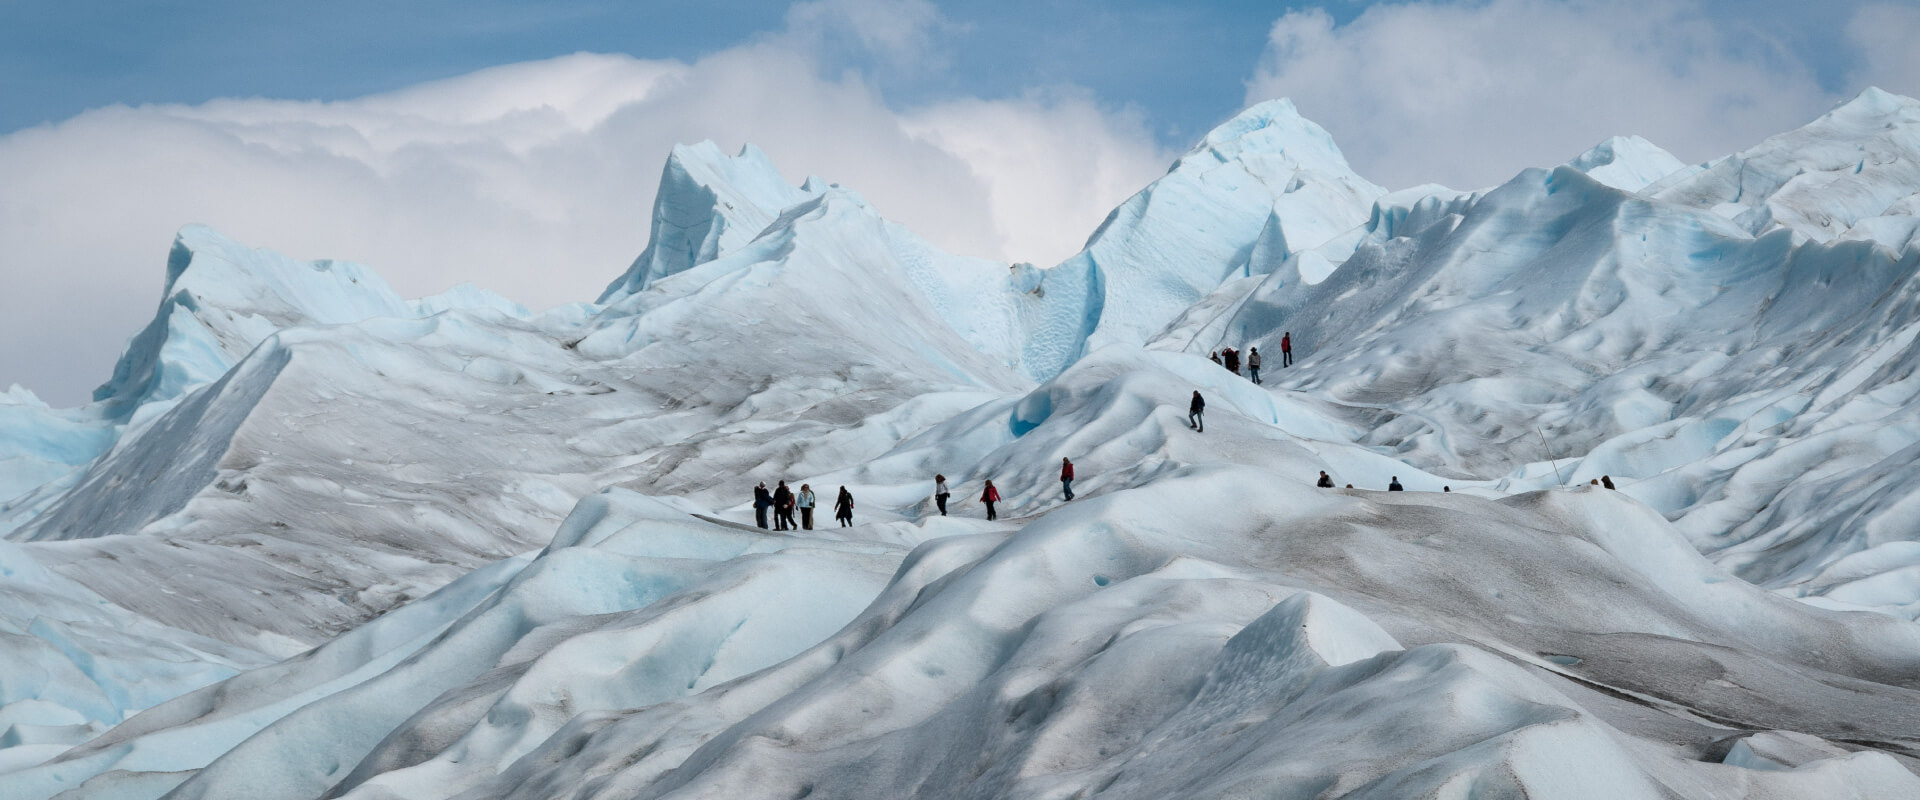 Minitrekking Over Perito Moreno Glacier - Travel 54 Argentina